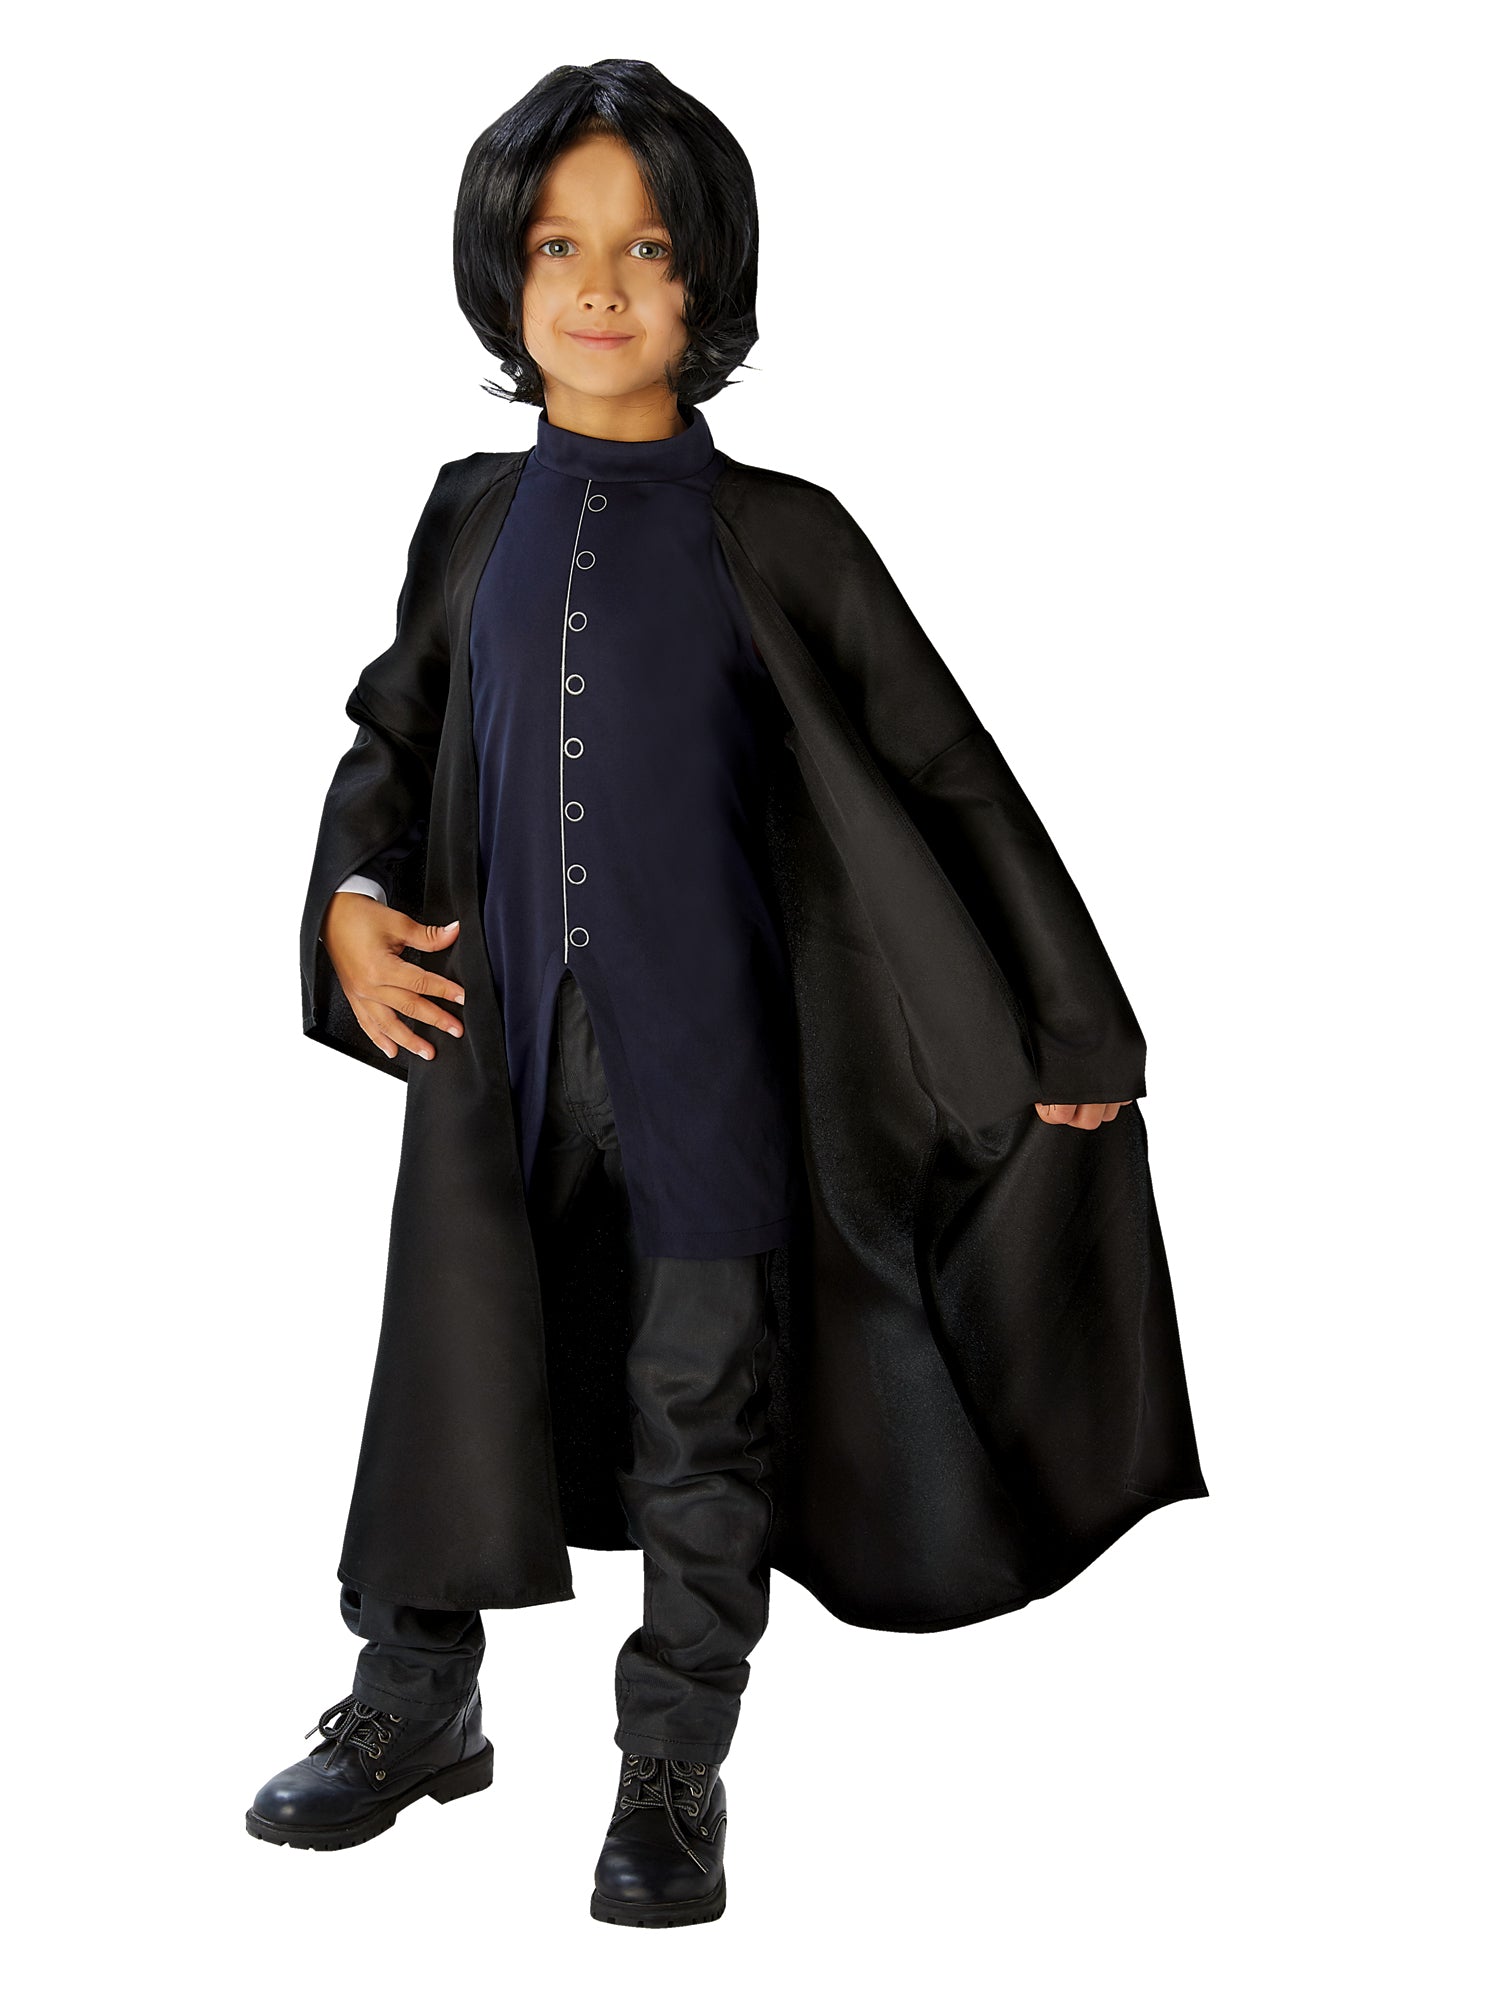 Professor Snape Costume Kids